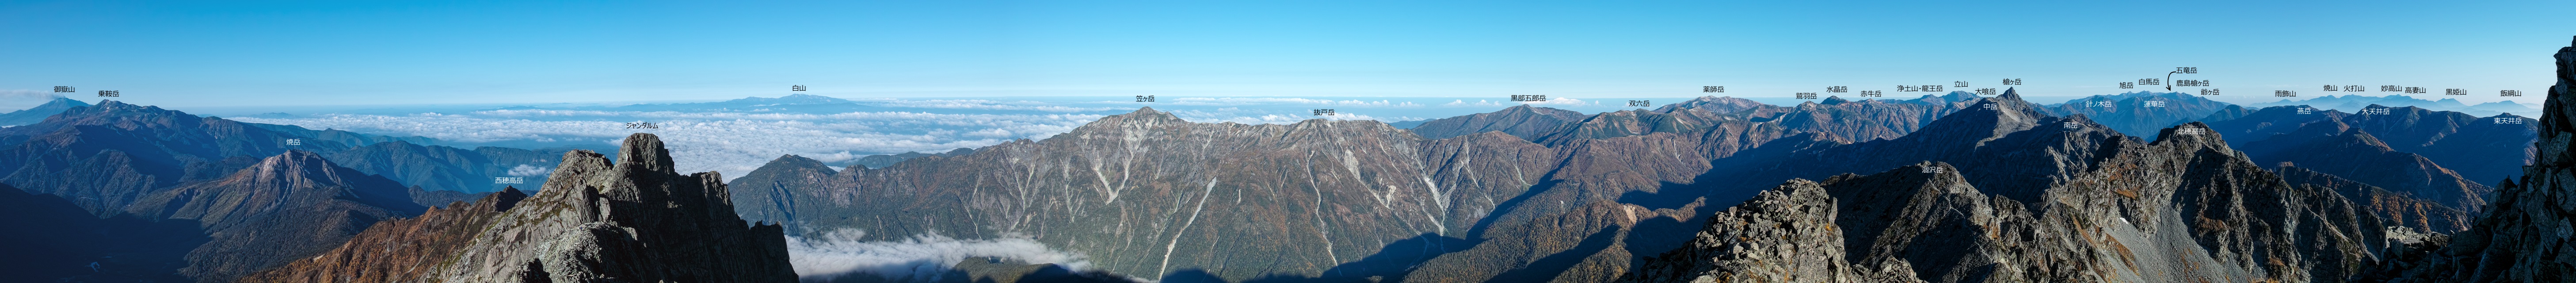 奥穂高岳からのパノラマ展望